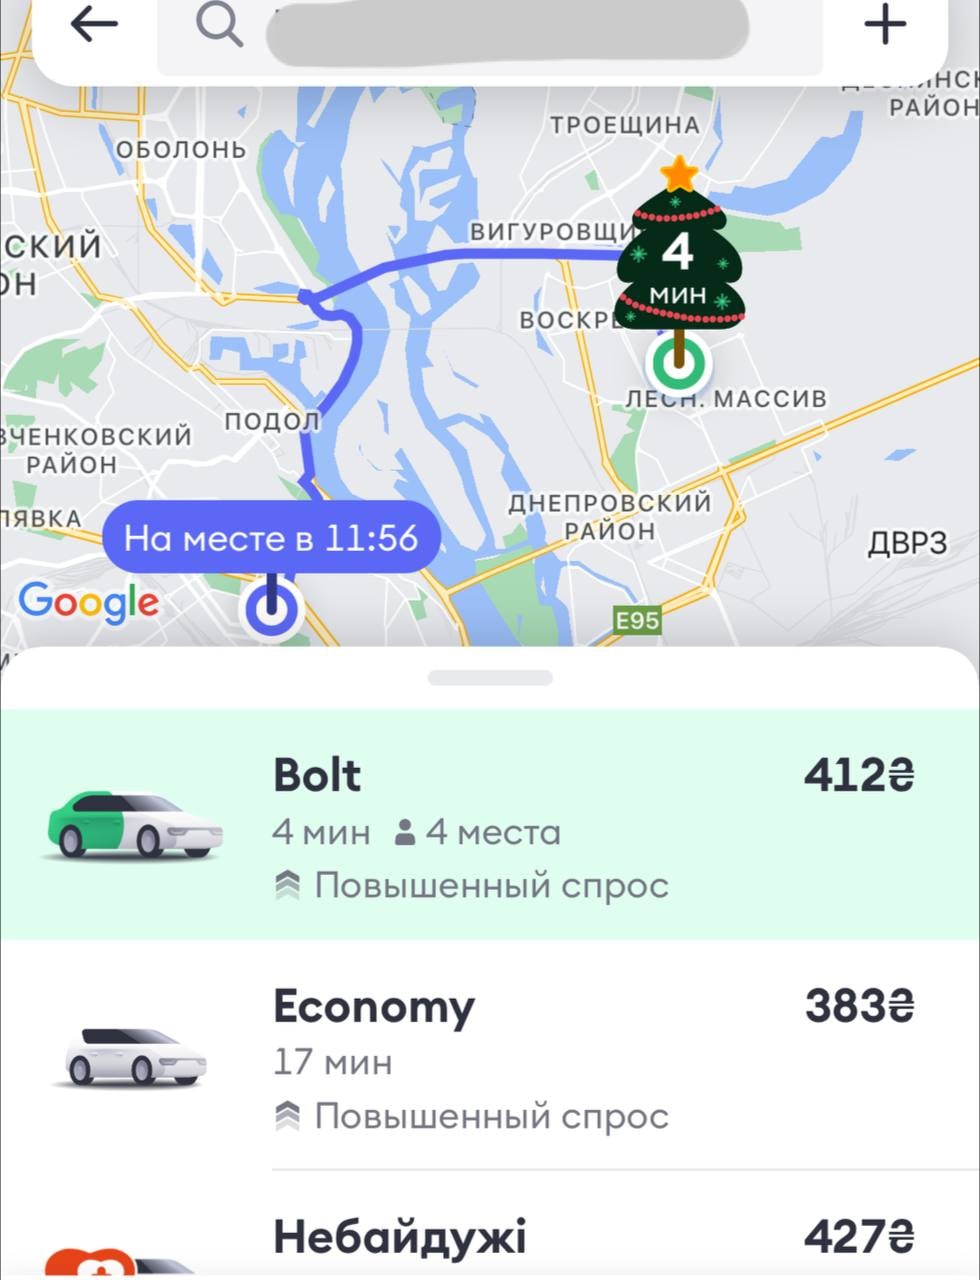 цены на такси в Киеве 29 декабря